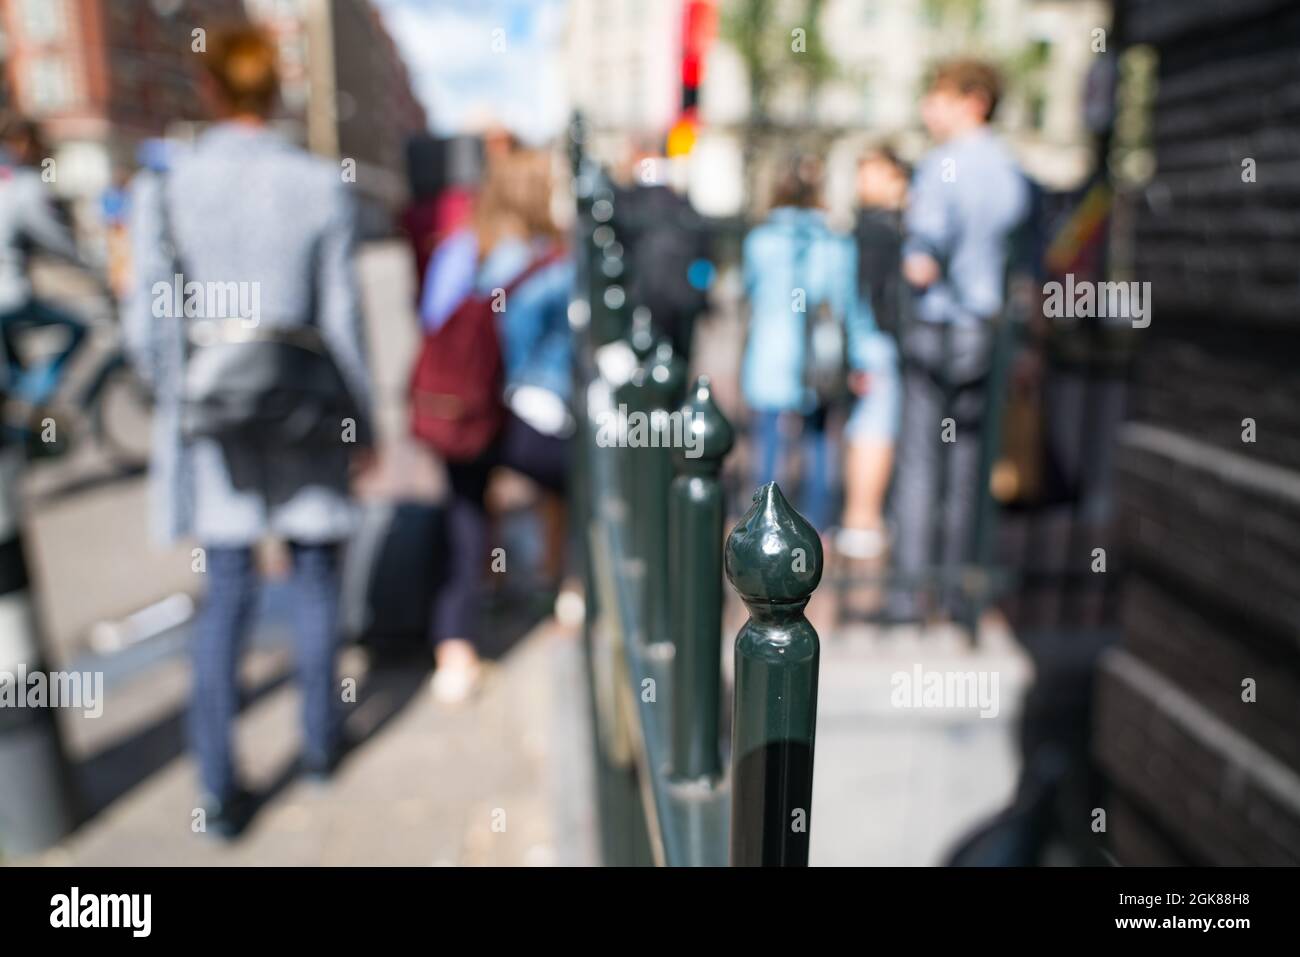 Immagine di sfondo sfocata e sfocata con balaustra in ferro battuto nella città di Amsterdam Paesi Bassi e pedoni che passano. Foto Stock